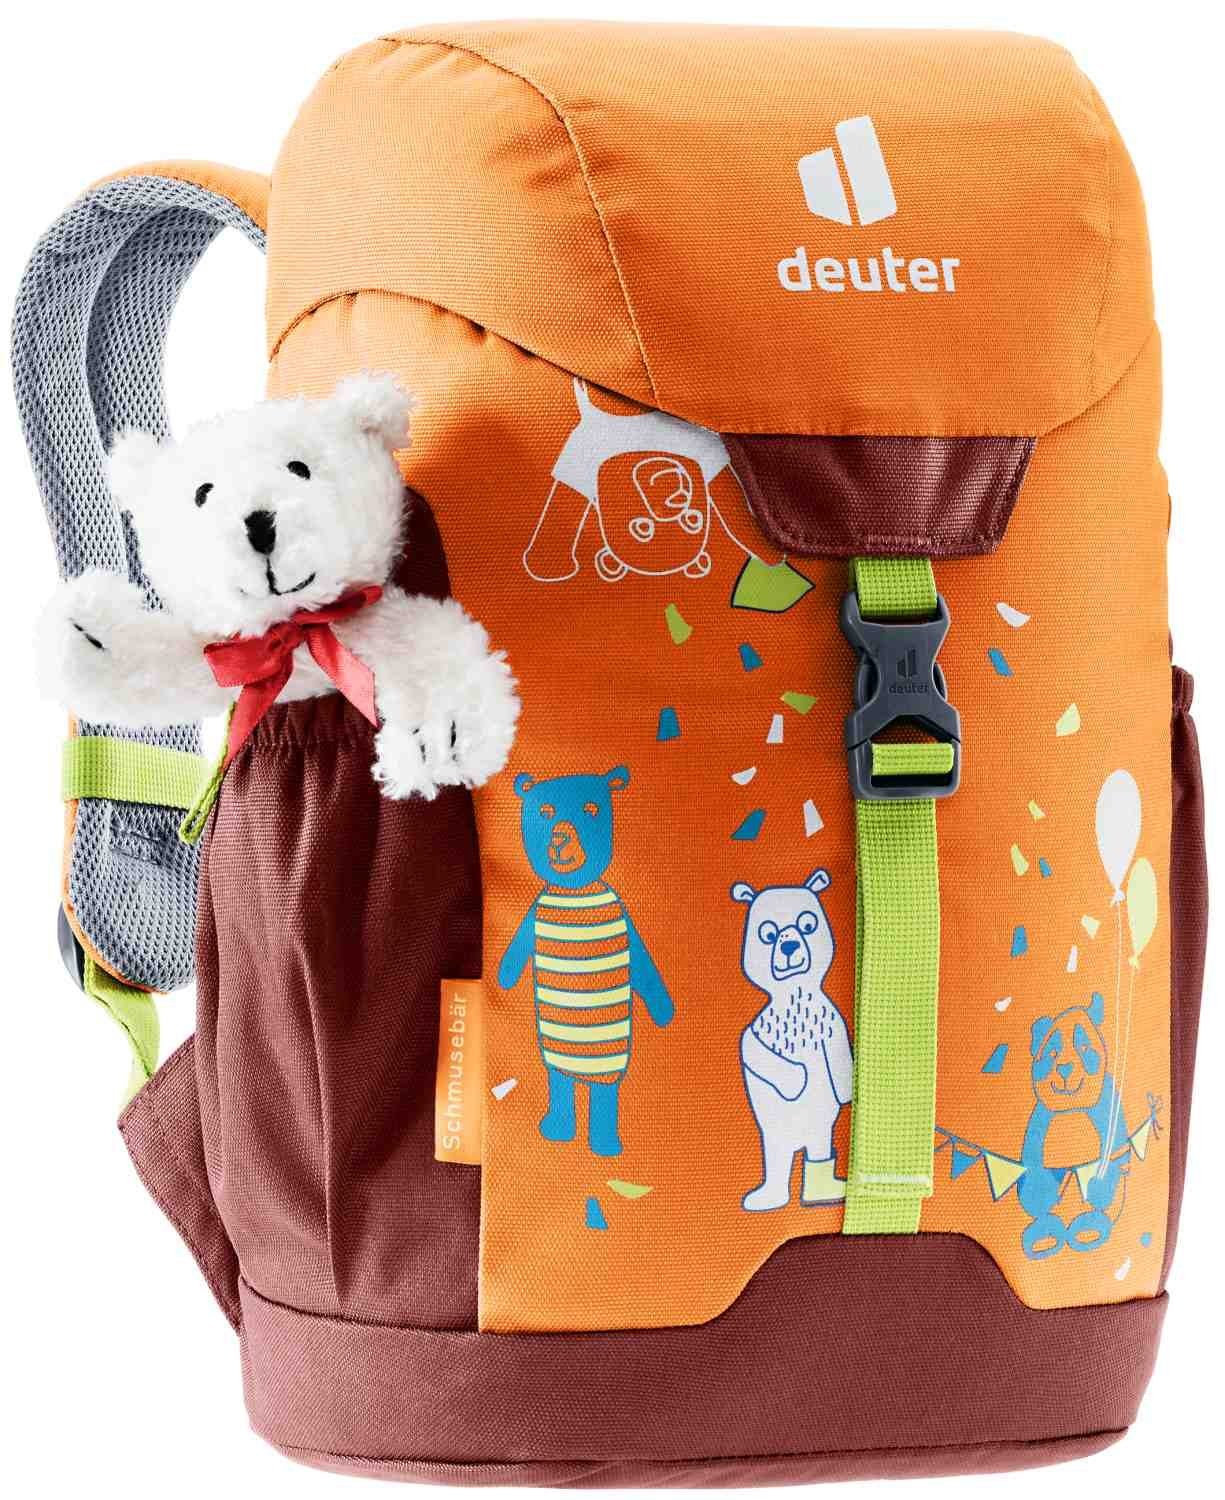 deuter deuter Babystiefel Kinderrucksack mit Teddybär Schmusebär mandarine-redwood